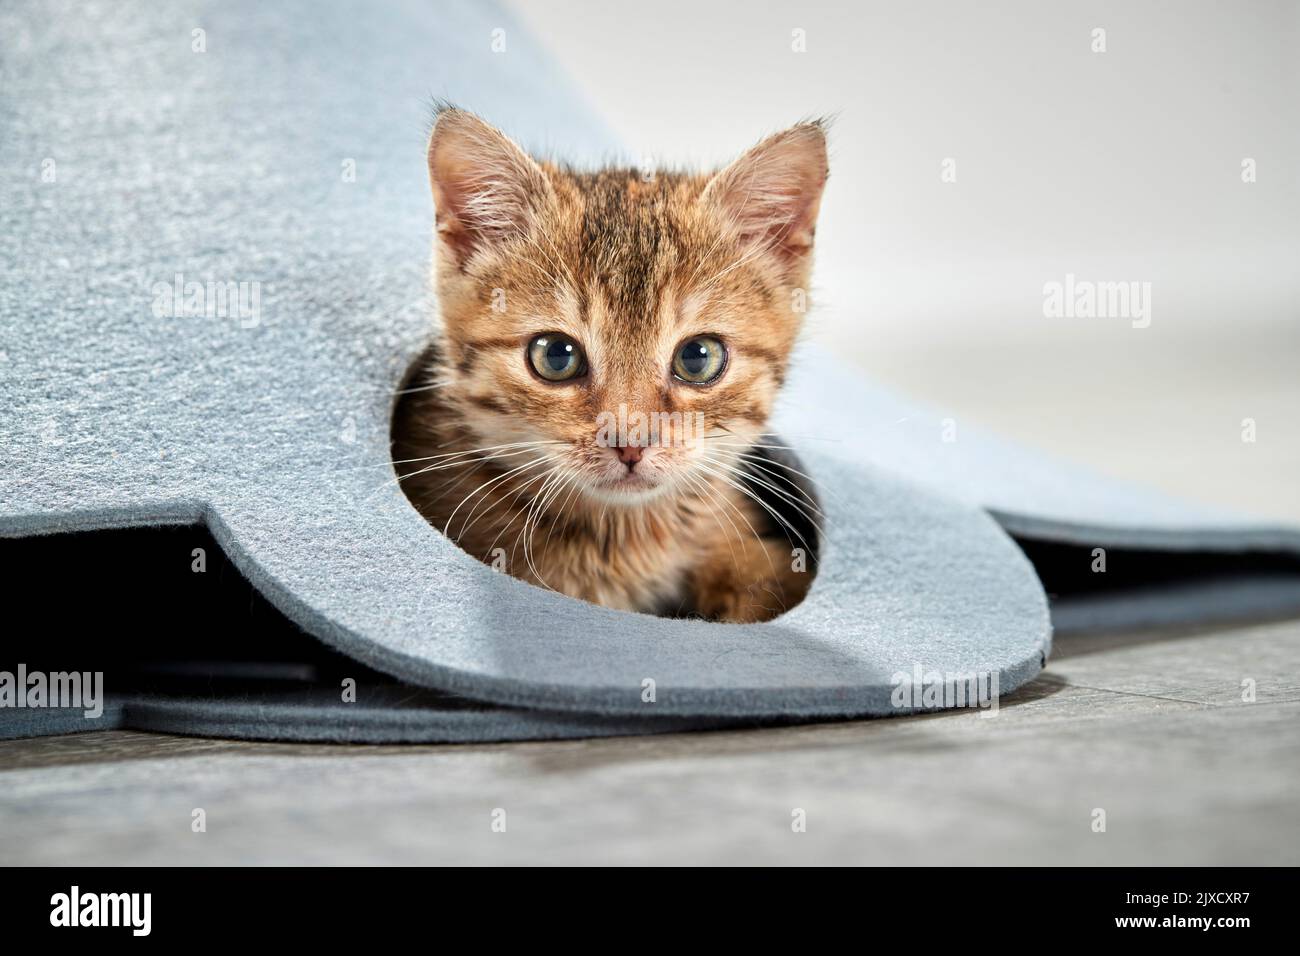 Gato doméstico. Un gatito tabby mira fuera de un bolso de fieltro, Alemania Foto de stock